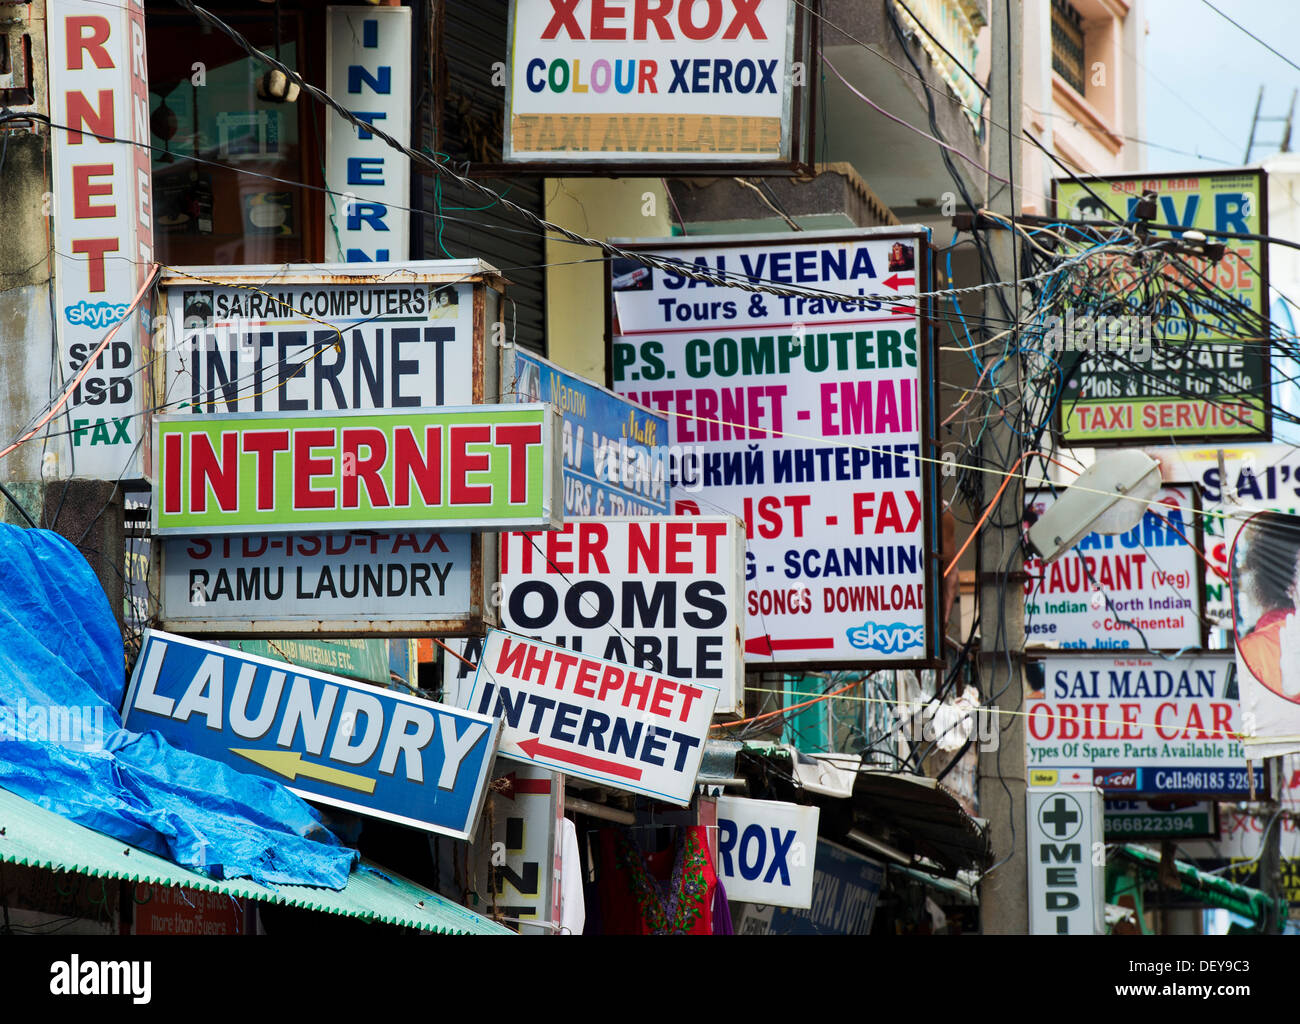 Internet indien panneaux le long d'une rue indienne. Puttaparthi, Andhra Pradesh, Inde Banque D'Images